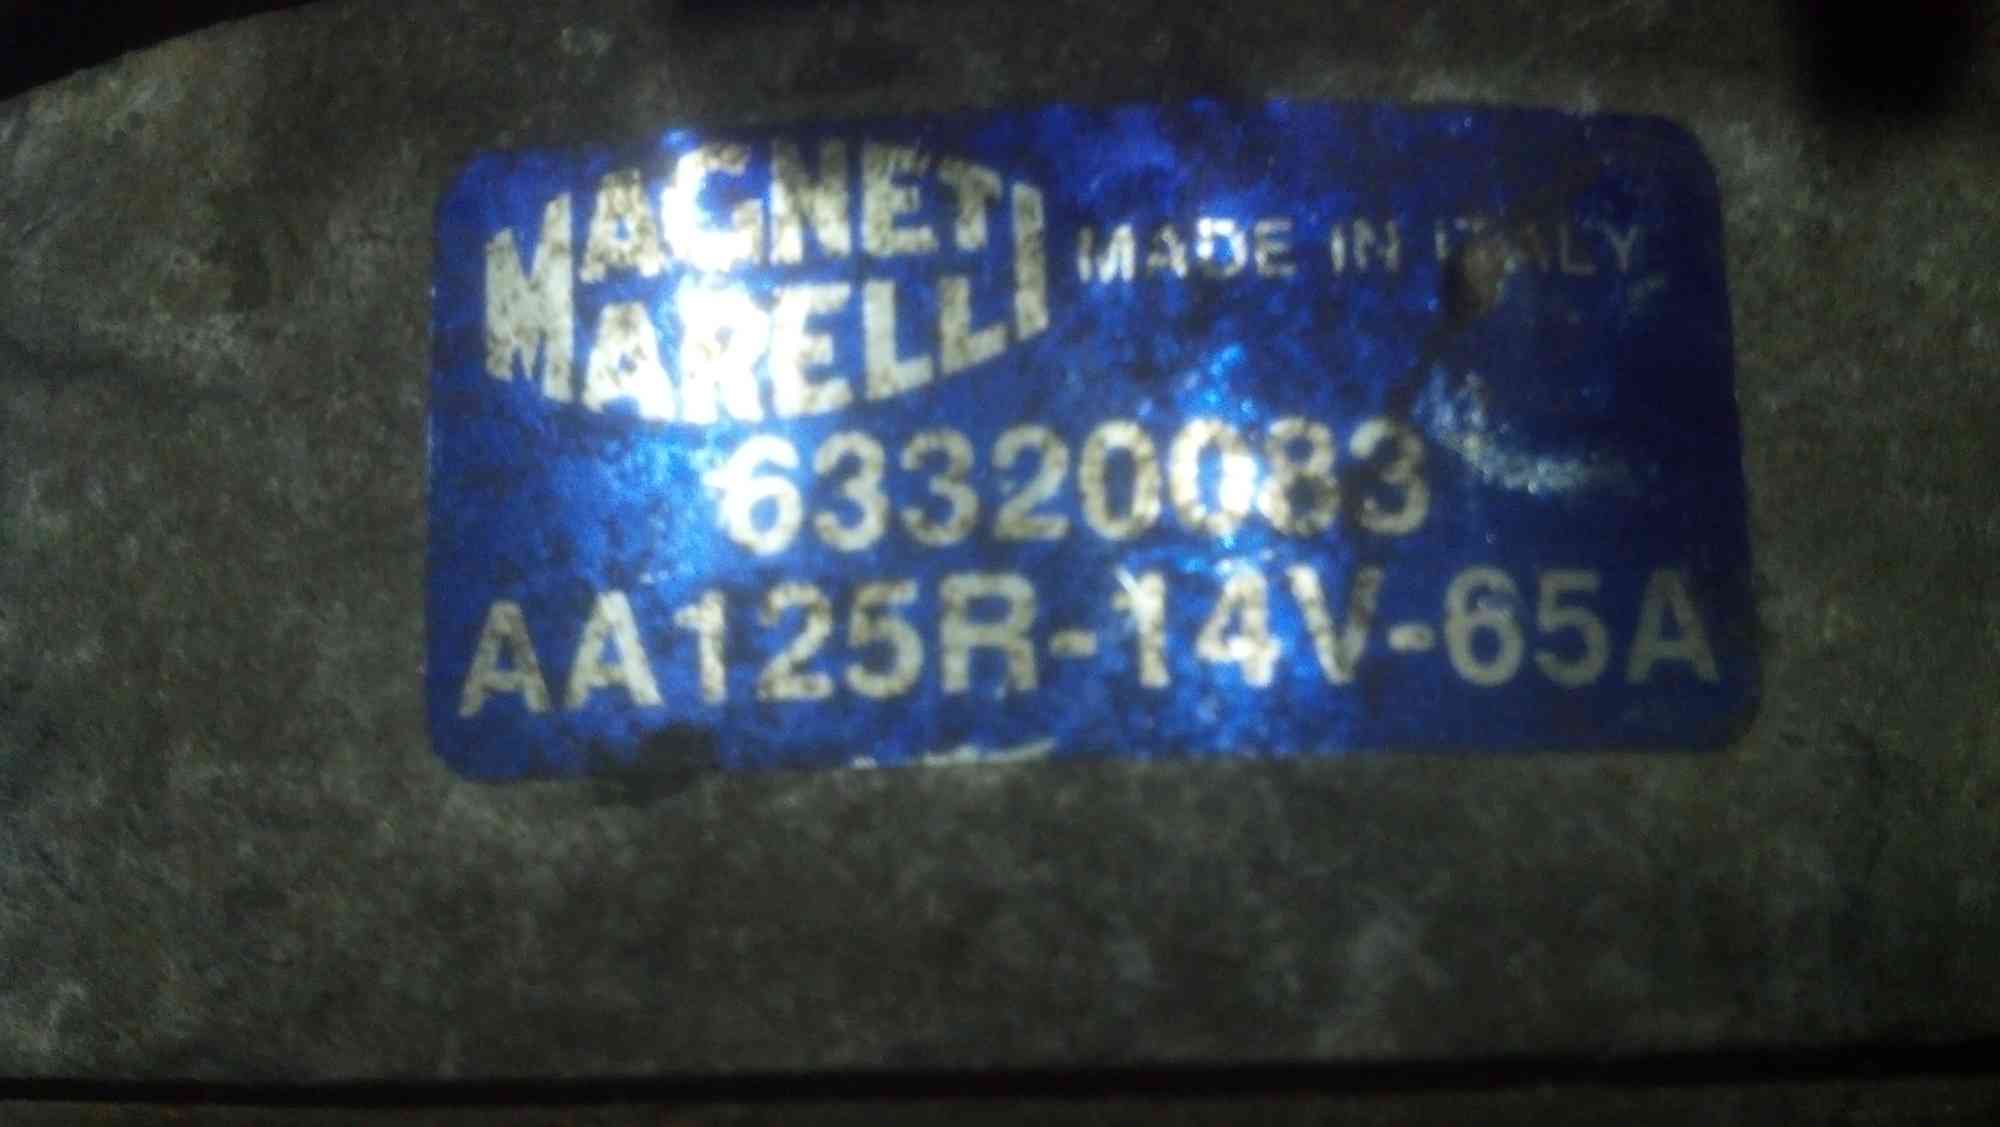 Генератор MAGNETI MARELLI 63320083 наклейка